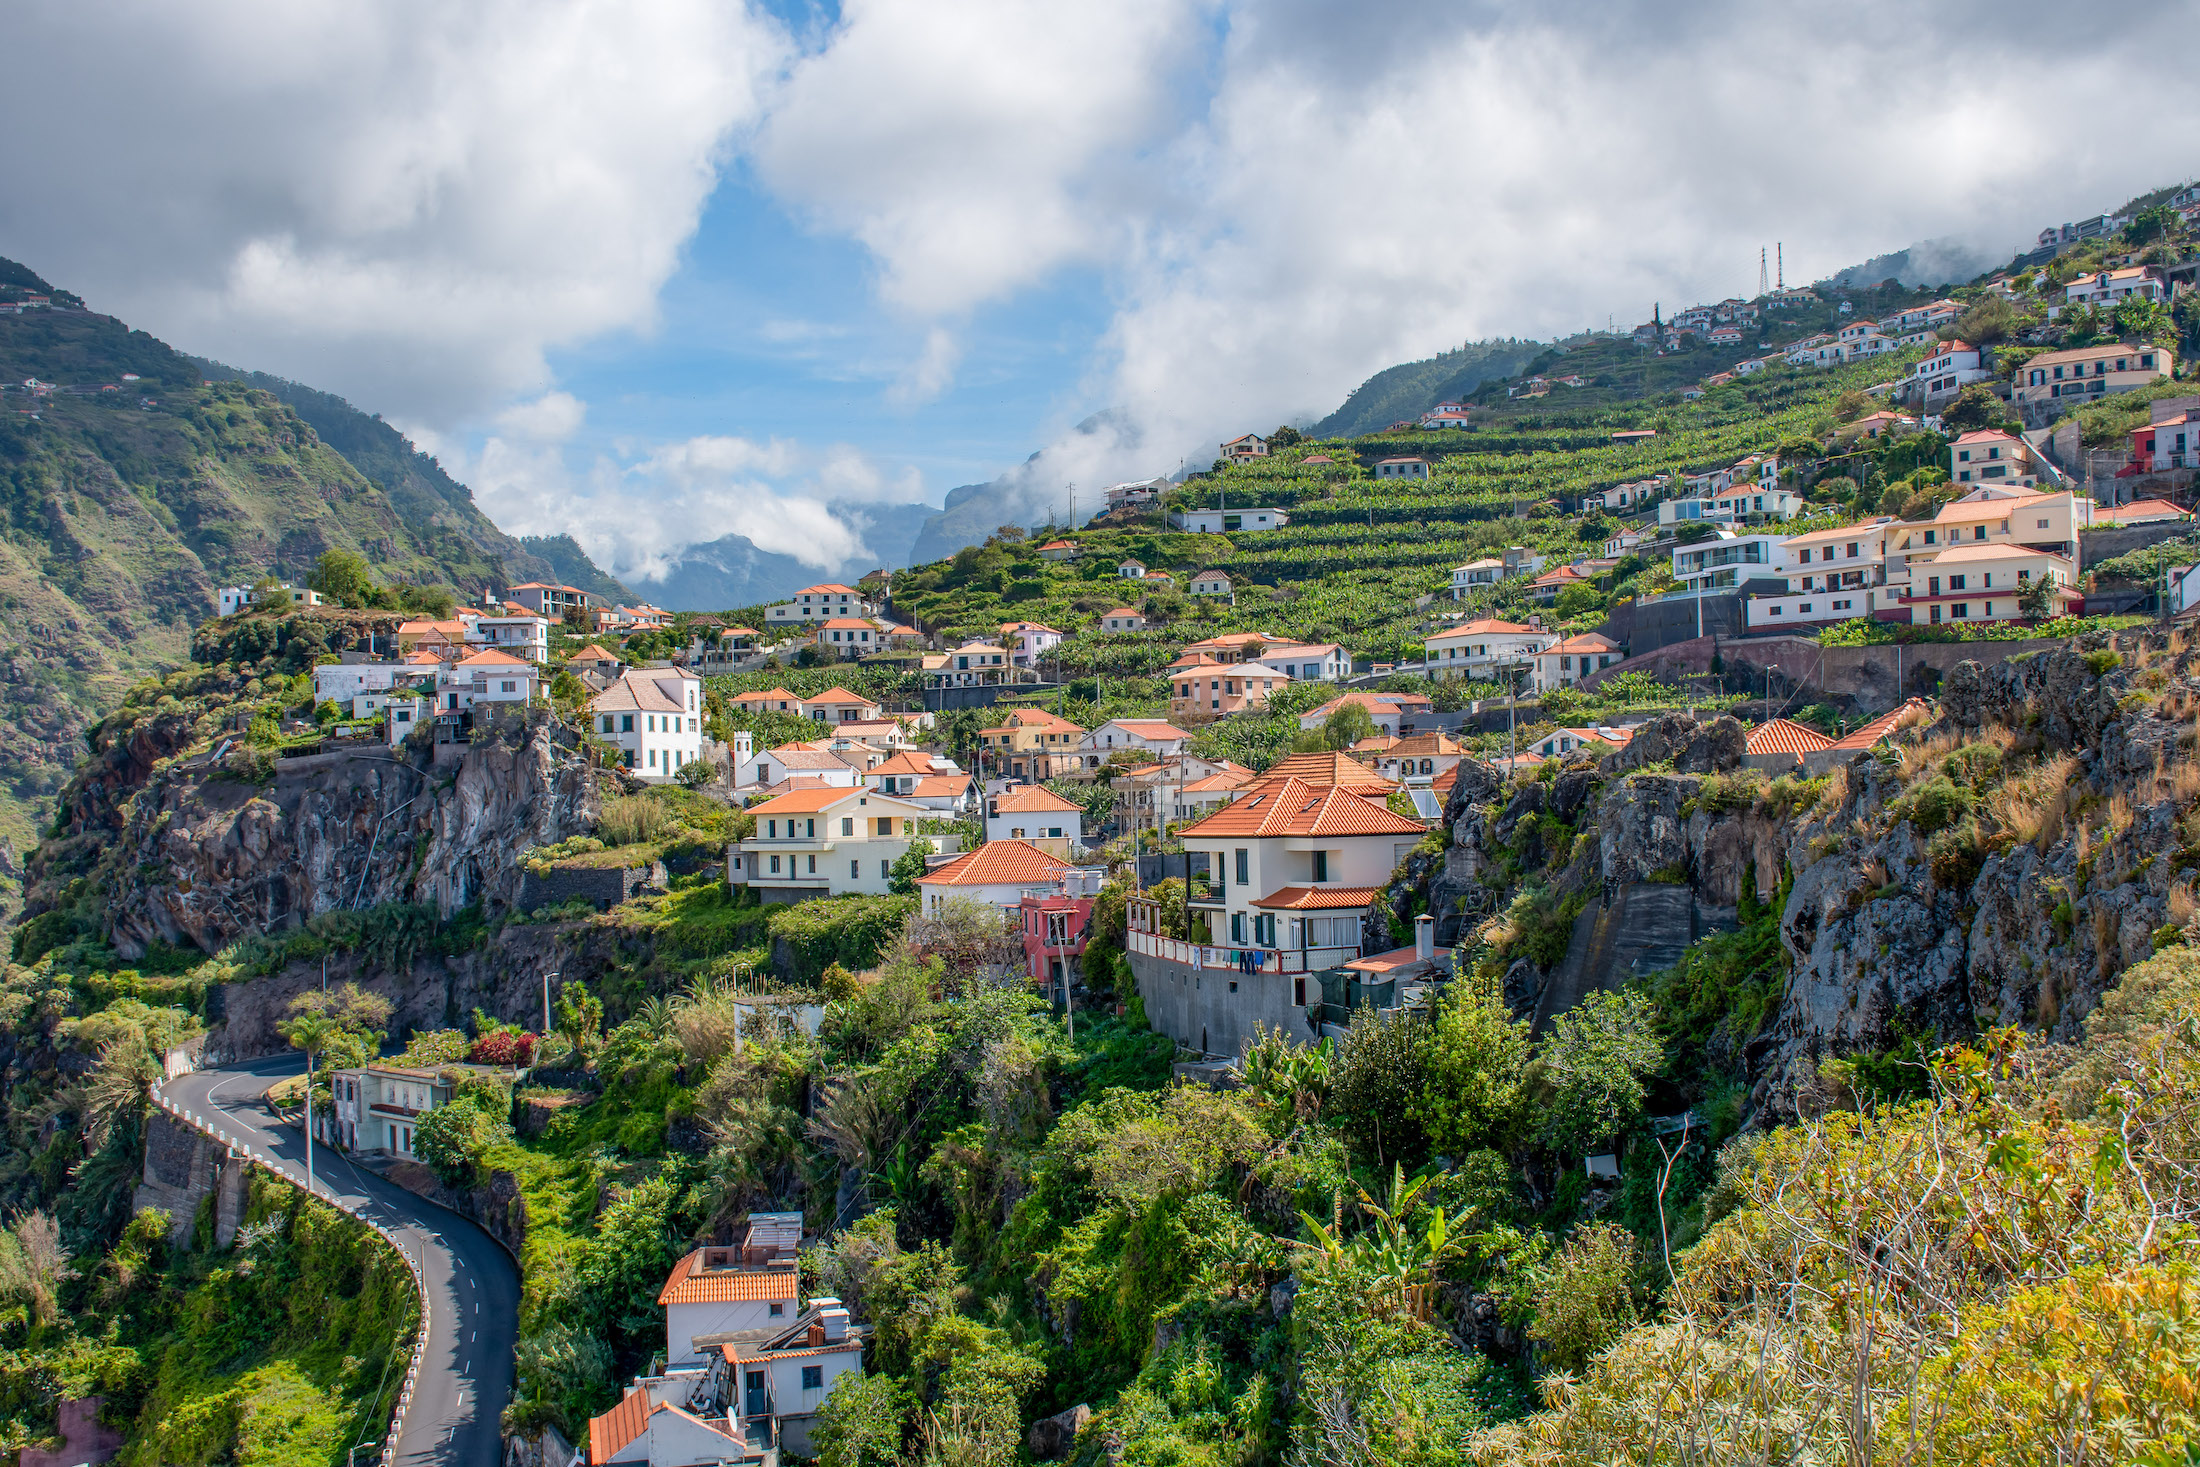 Overal in Madeira zie je huisjes met rode of oranje daken die opgaan in de groene kleuren